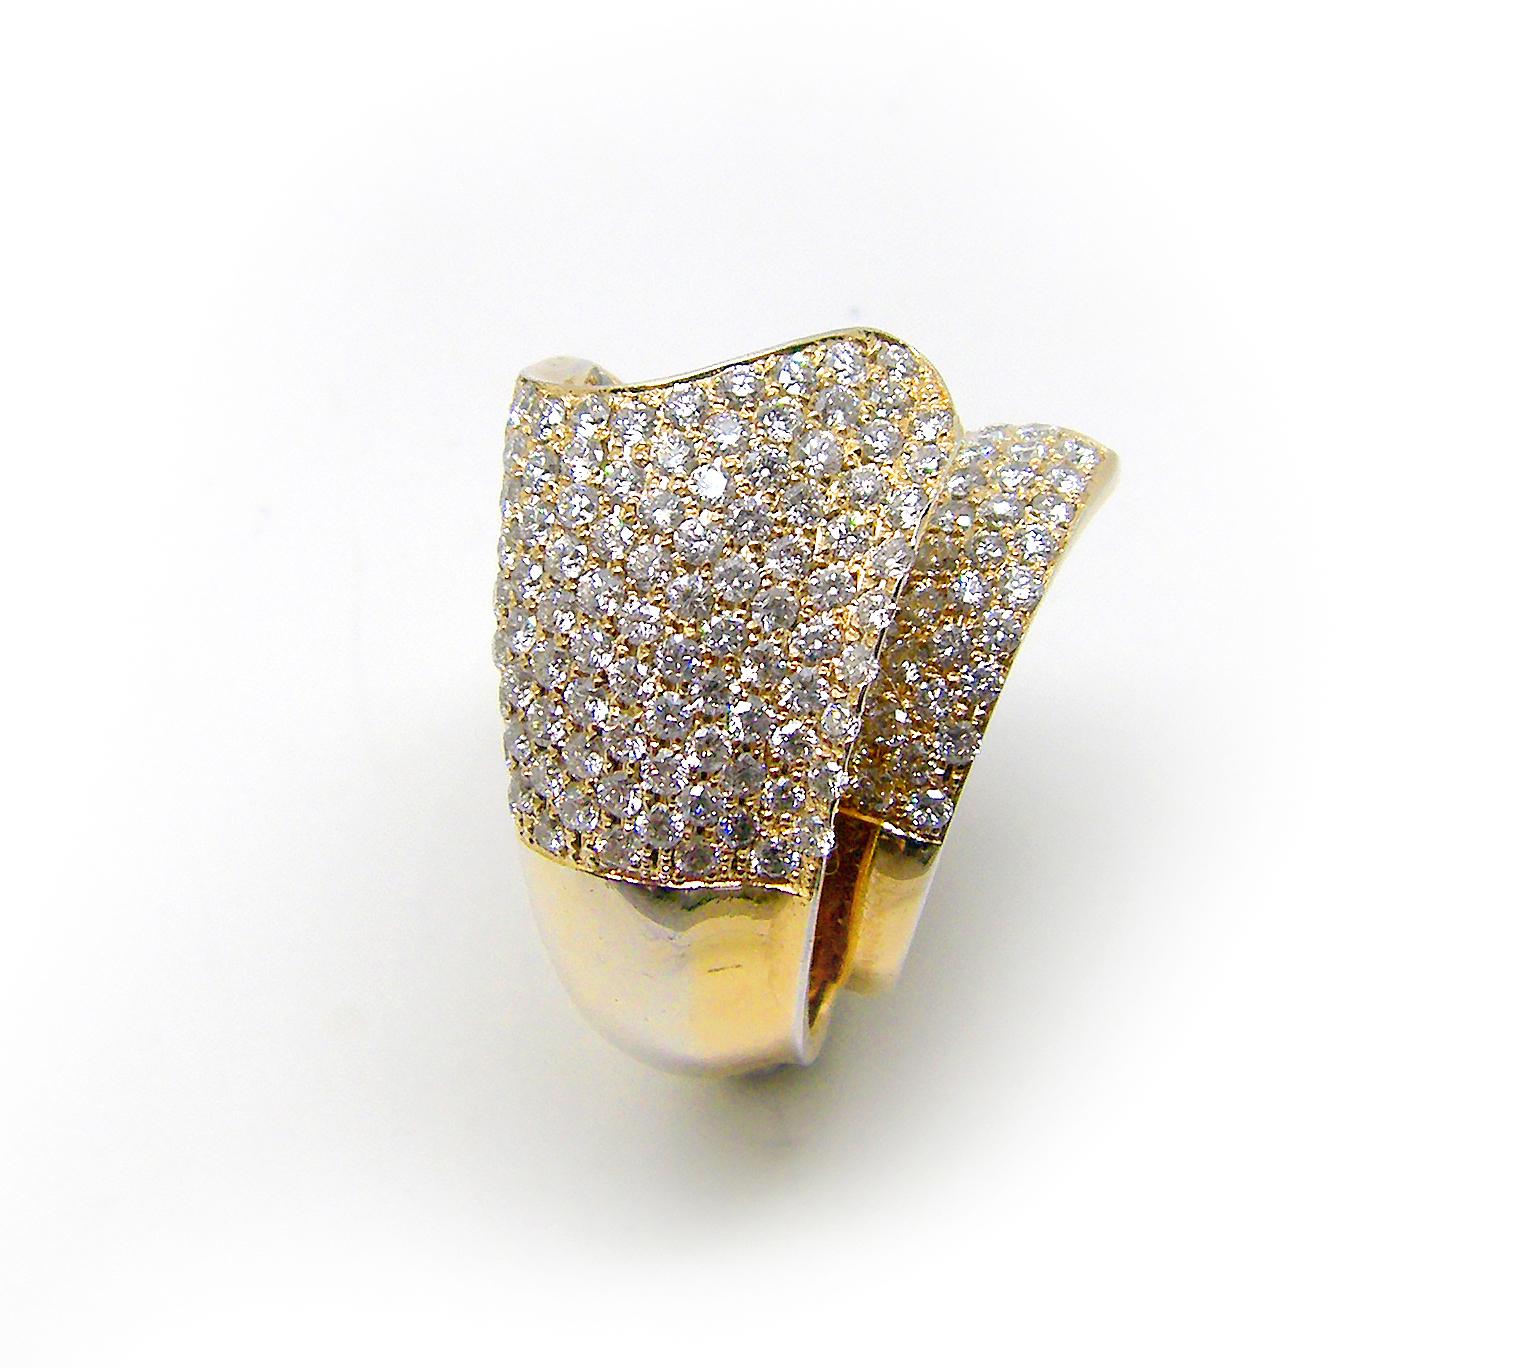 Cette bague à large anneau en or rose 18 carats avec diamant taille brillant blanc, conçue par le designer S.Georgios, est entièrement réalisée à la main dans un design unique. Le magnifique anneau large est orné de diamants blancs taille brillant